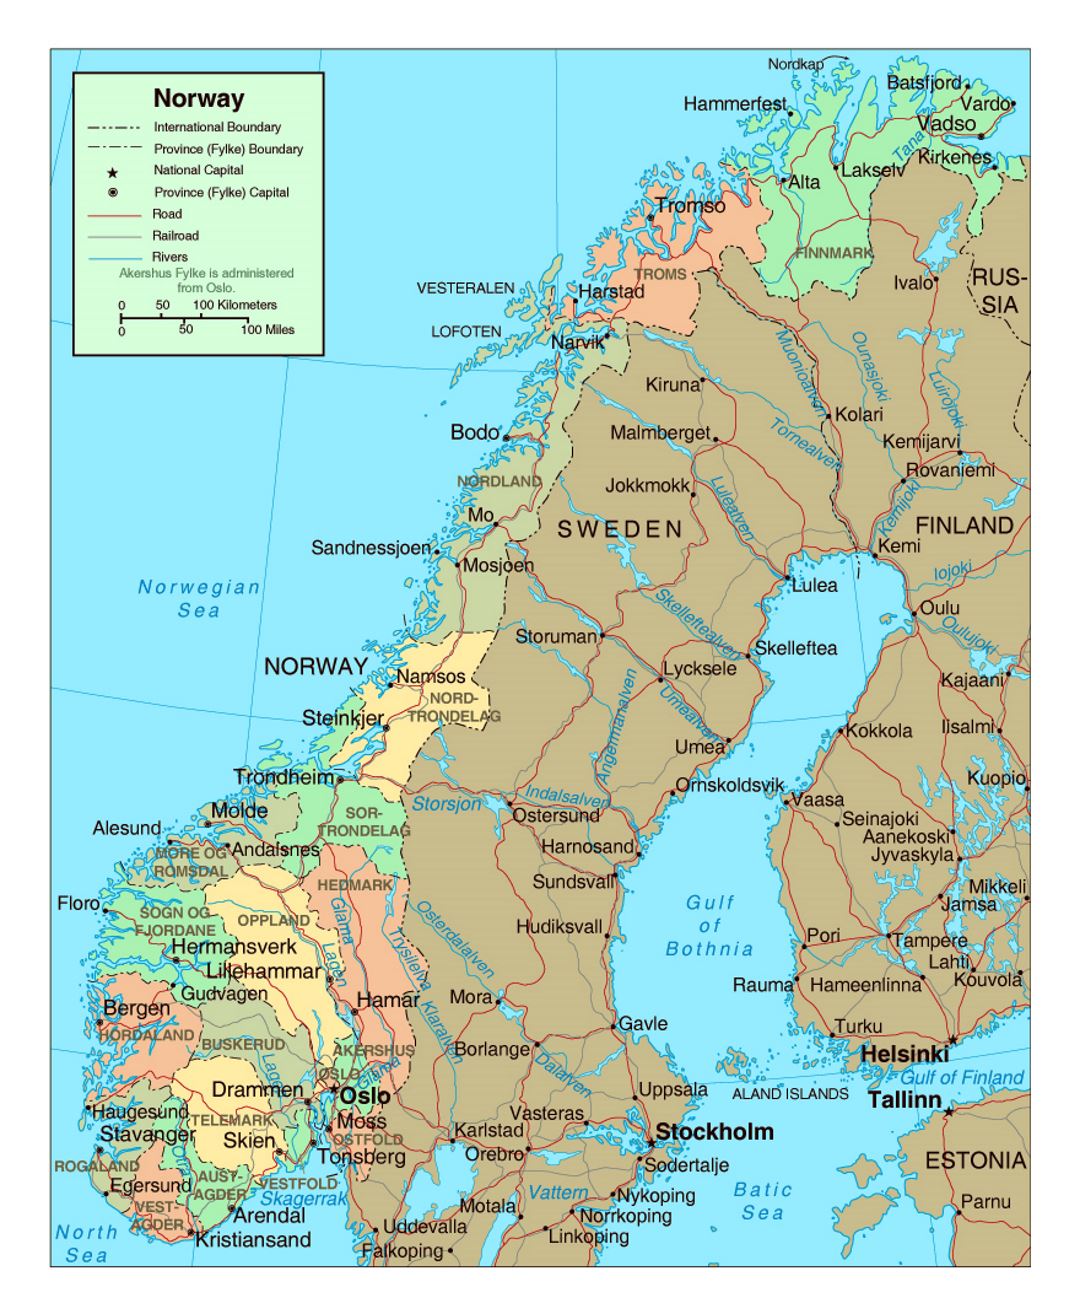 Mapa político y administrativo de Noruega con carreteras y ciudades principales